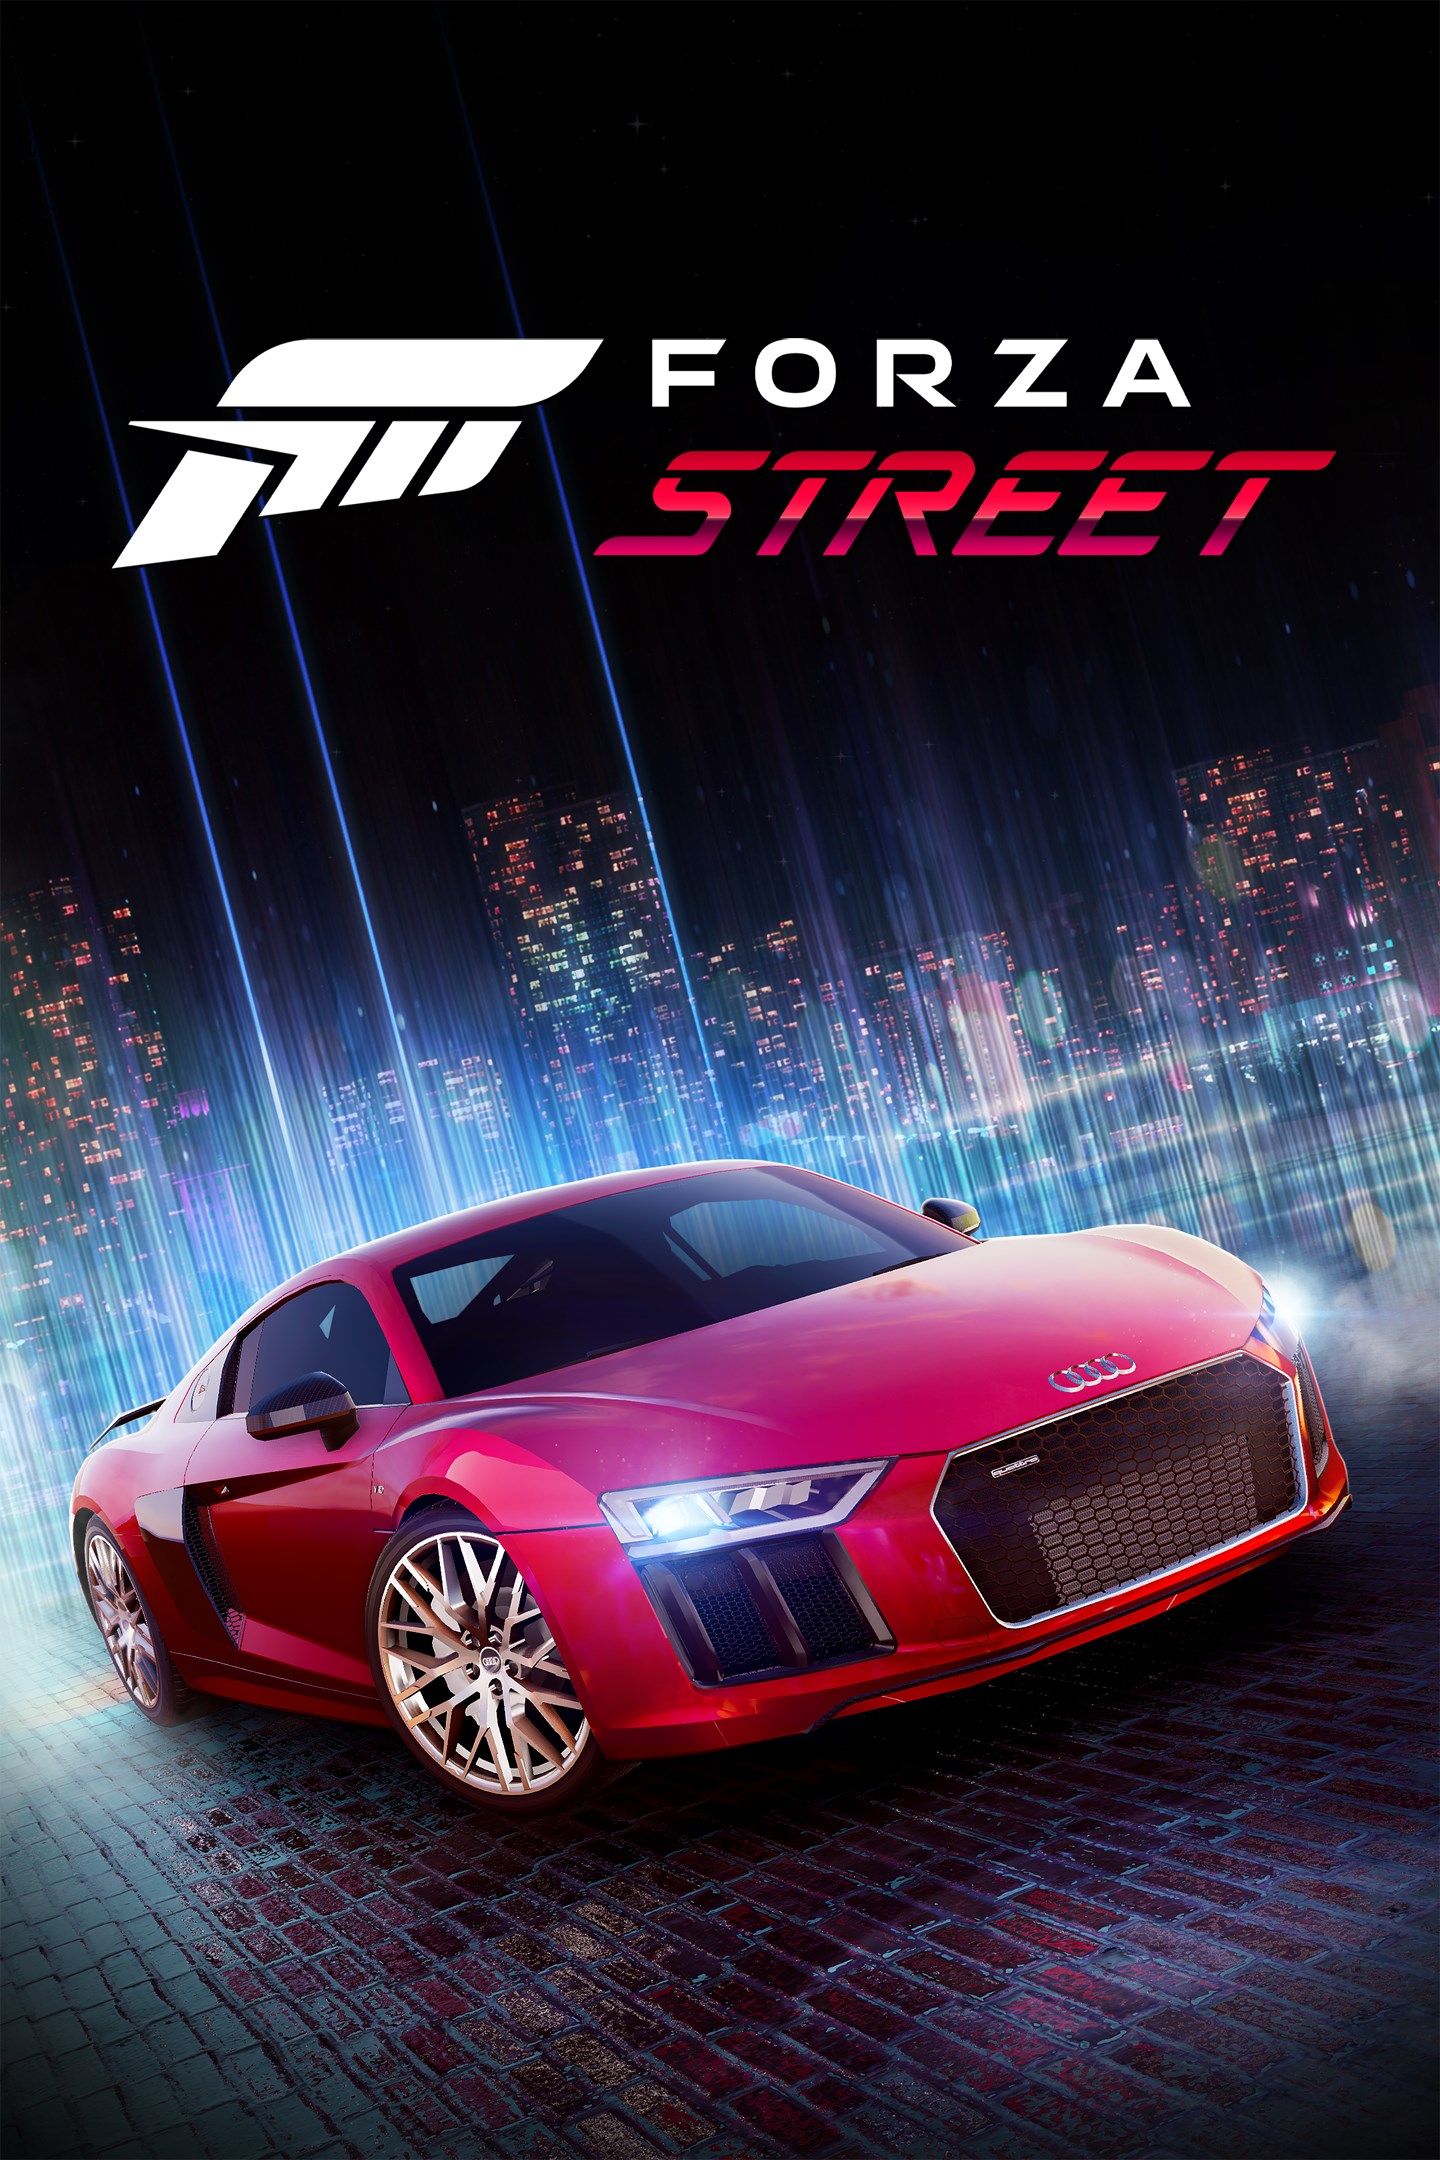 Forza Motorsport 3 - Wikipedia